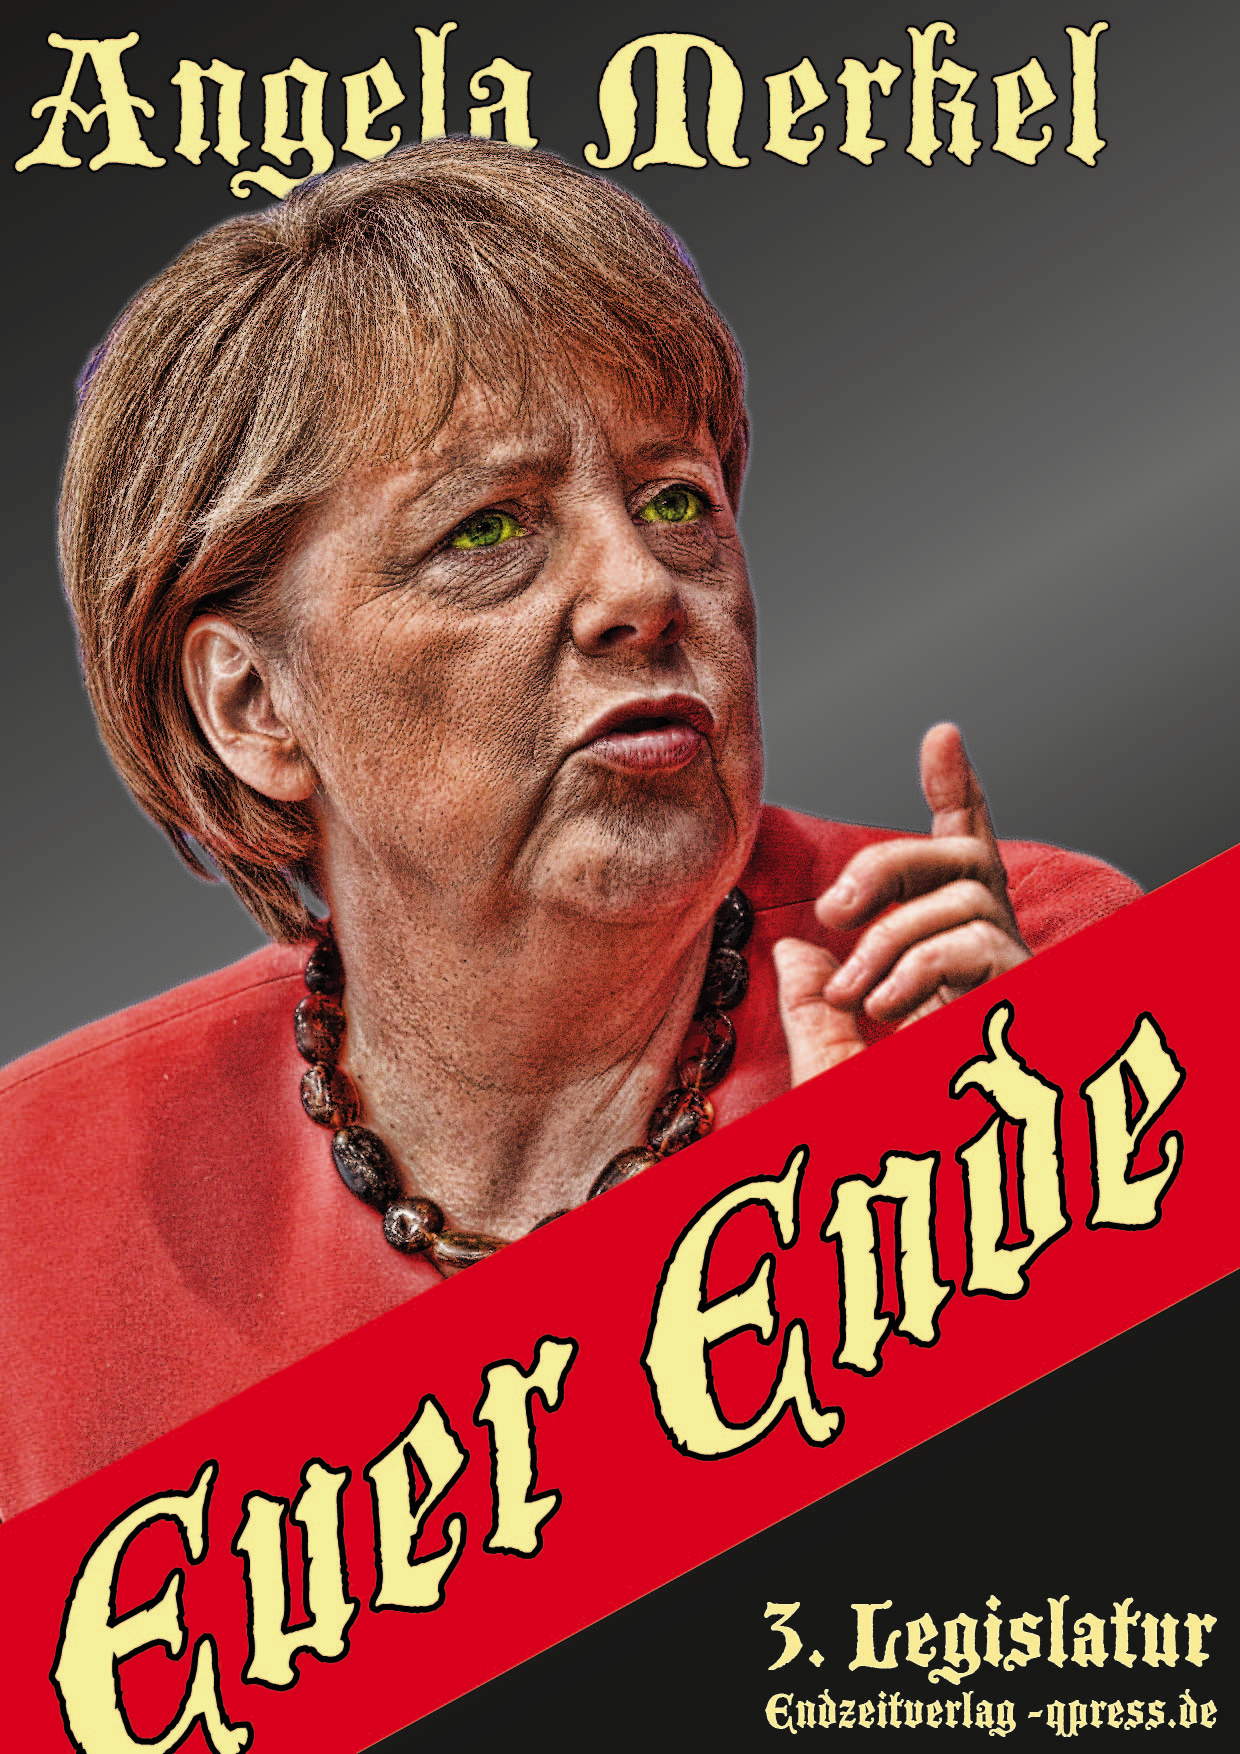 https://qpress.de/wp-content/uploads/2016/06/Buch-Euer-ende-von-Angela-Merkel-dritte-Legislatur-Endzeitverlag-qpress.jpg